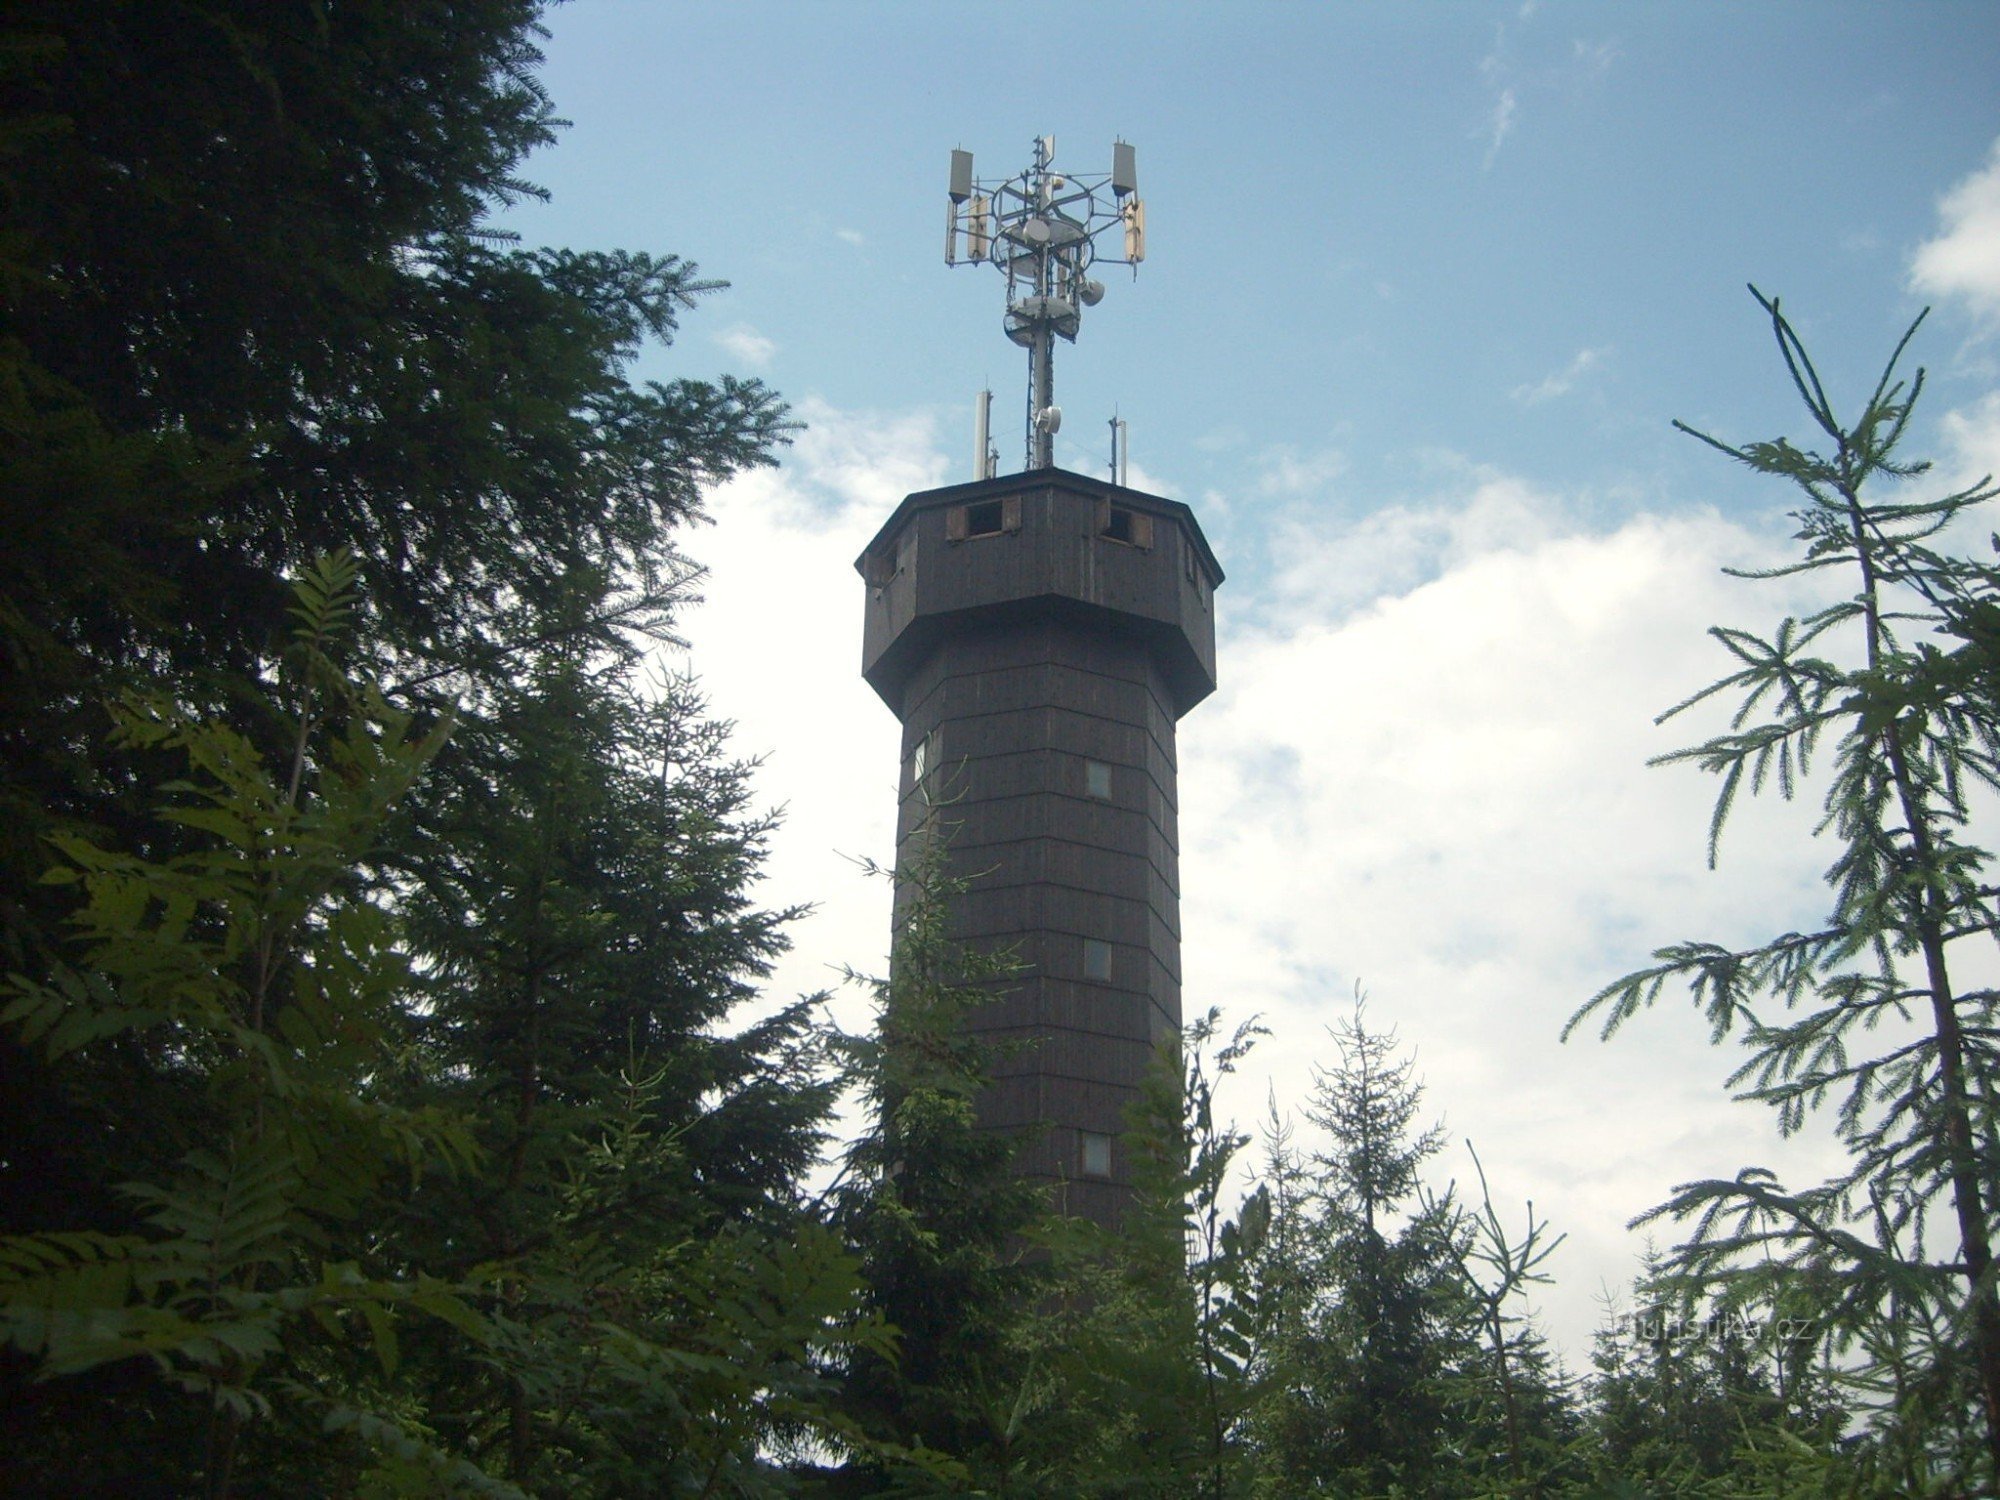 πύργος τηλεπικοινωνιών με πύργο παρατήρησης